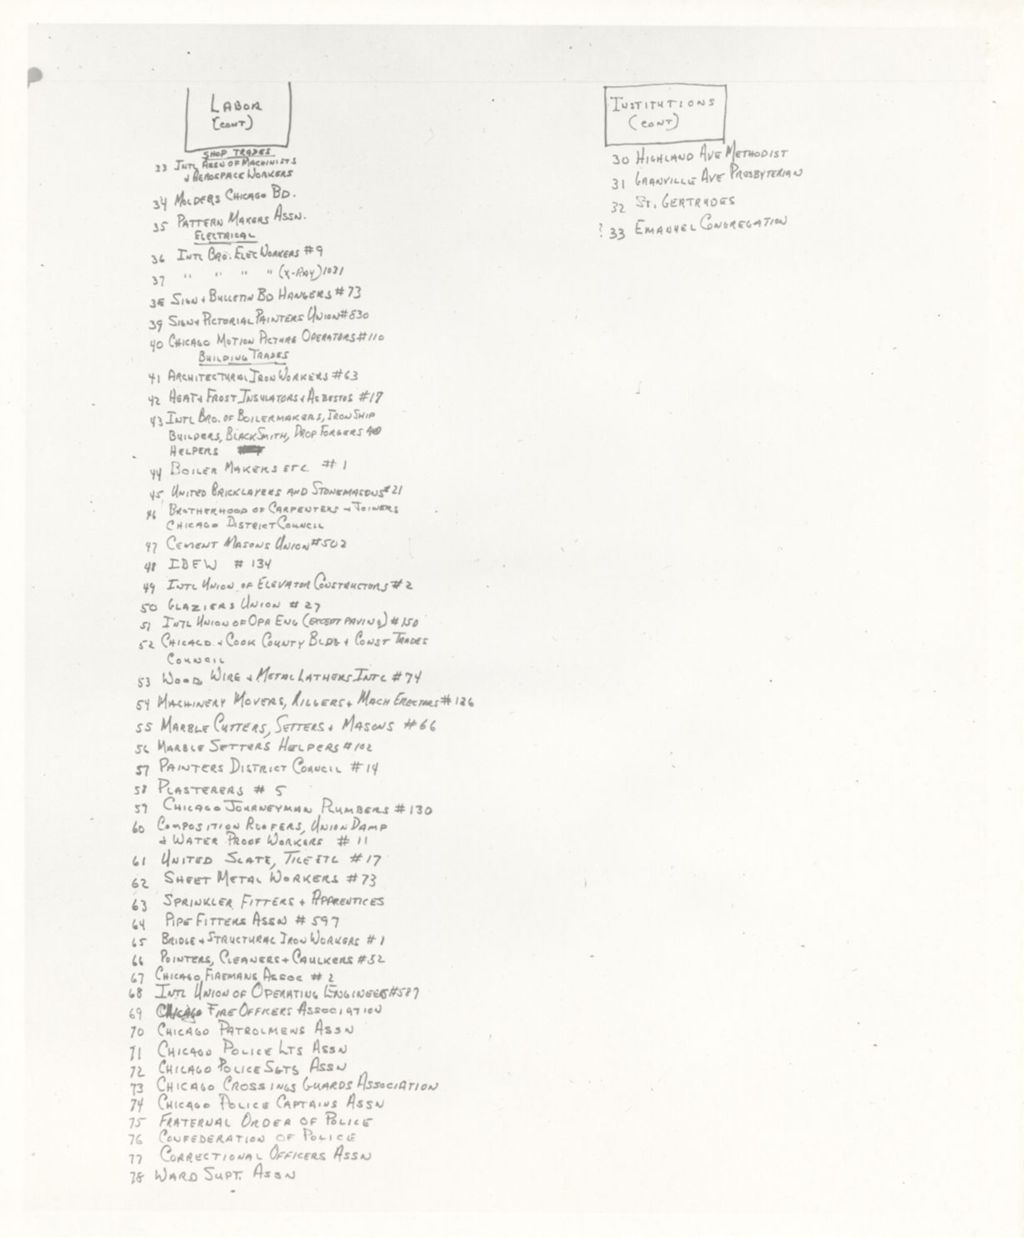 Miniature of Ward Organization Chart